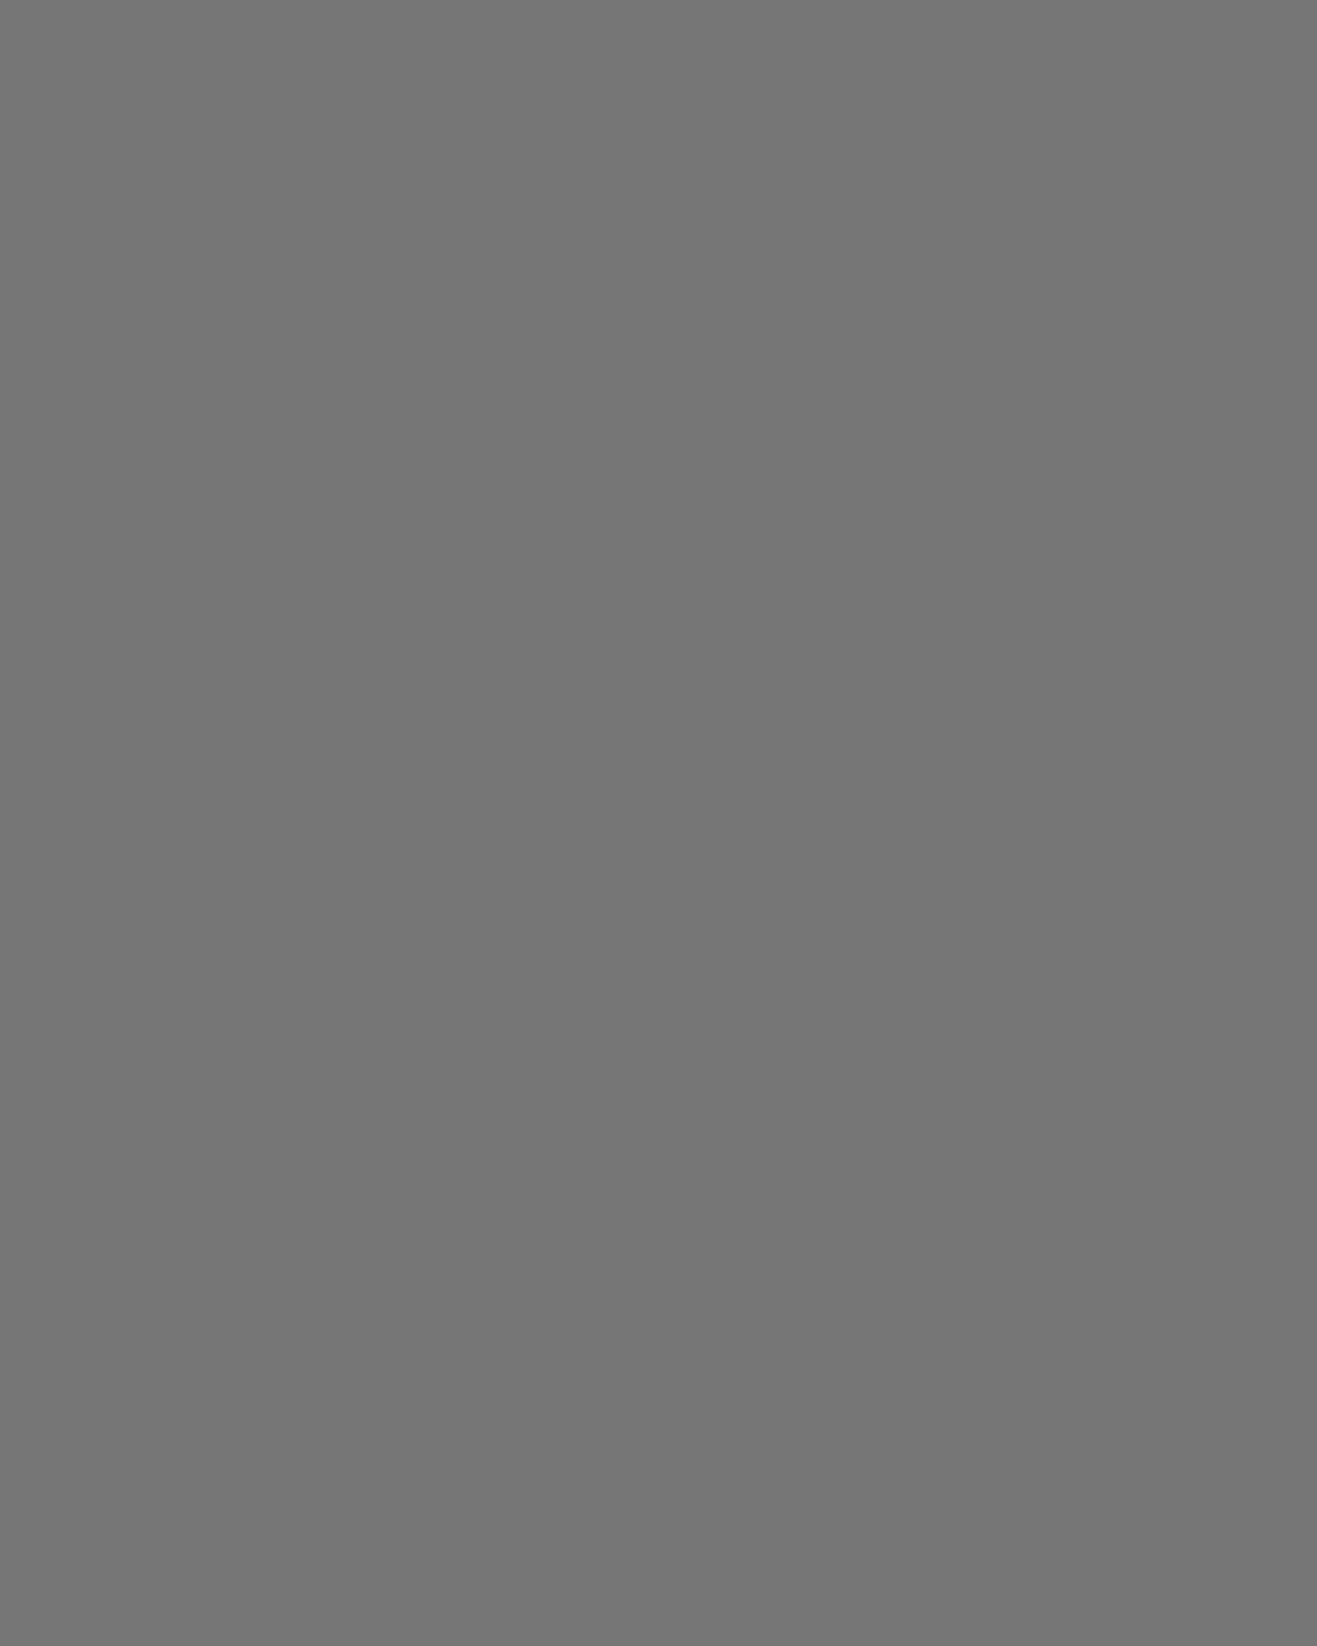 Мария Денисова в театральном костюме. Швейцария, 1915 год. Фотография: Государственный музей В.В. Маяковского, Москва